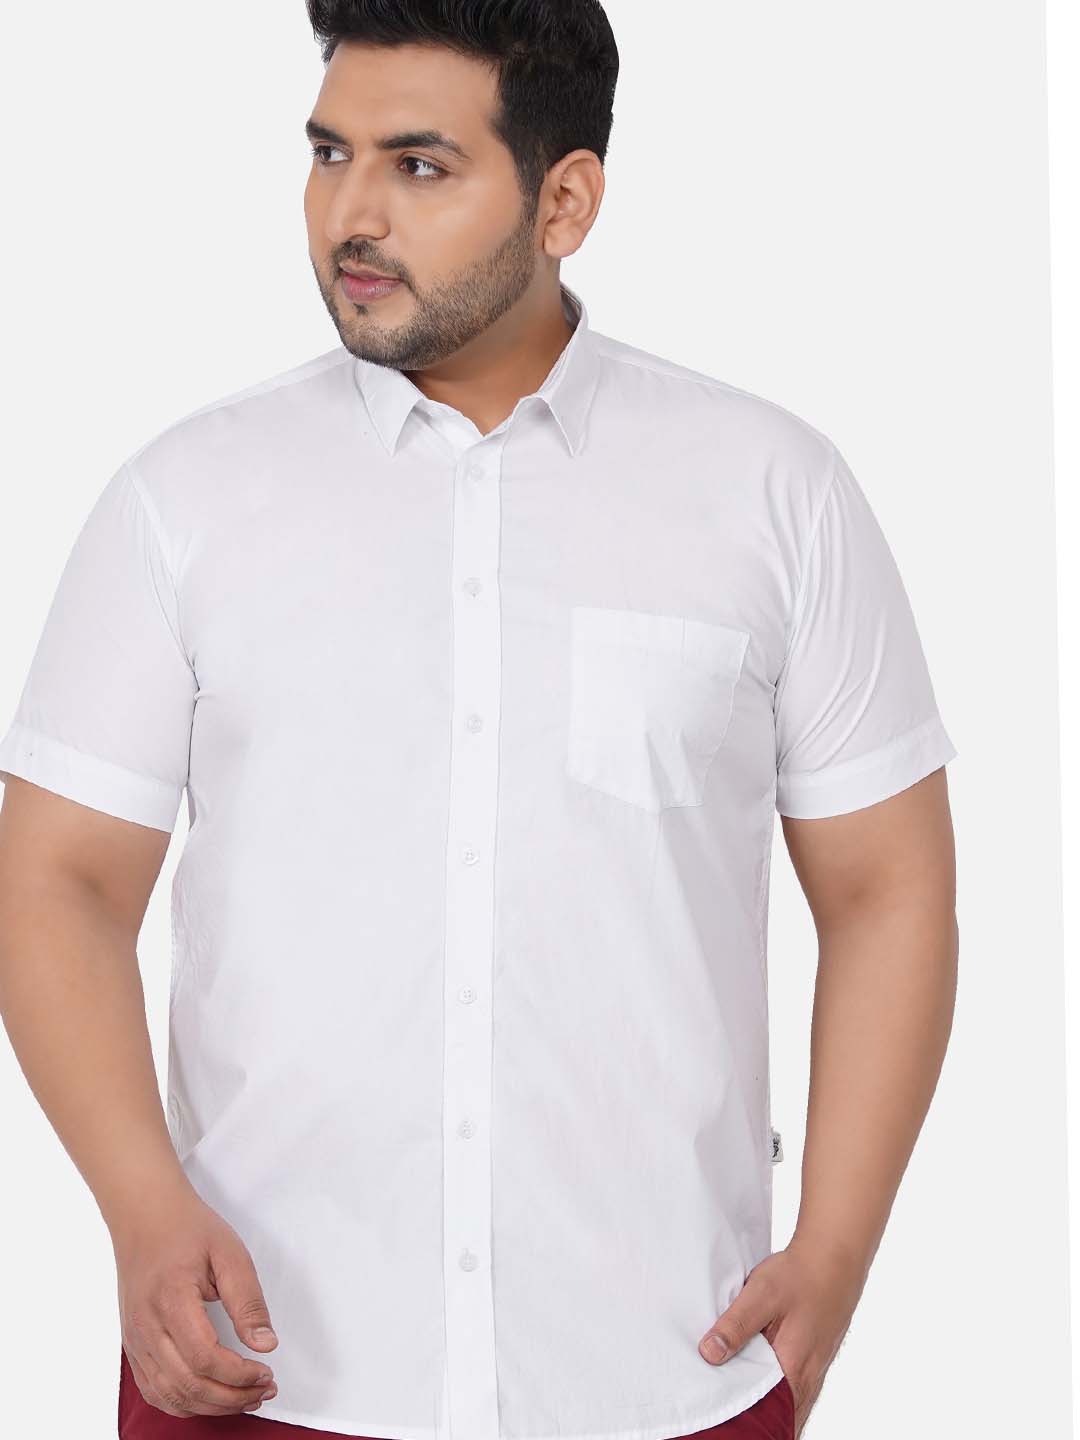 Classic White Shirt- Short